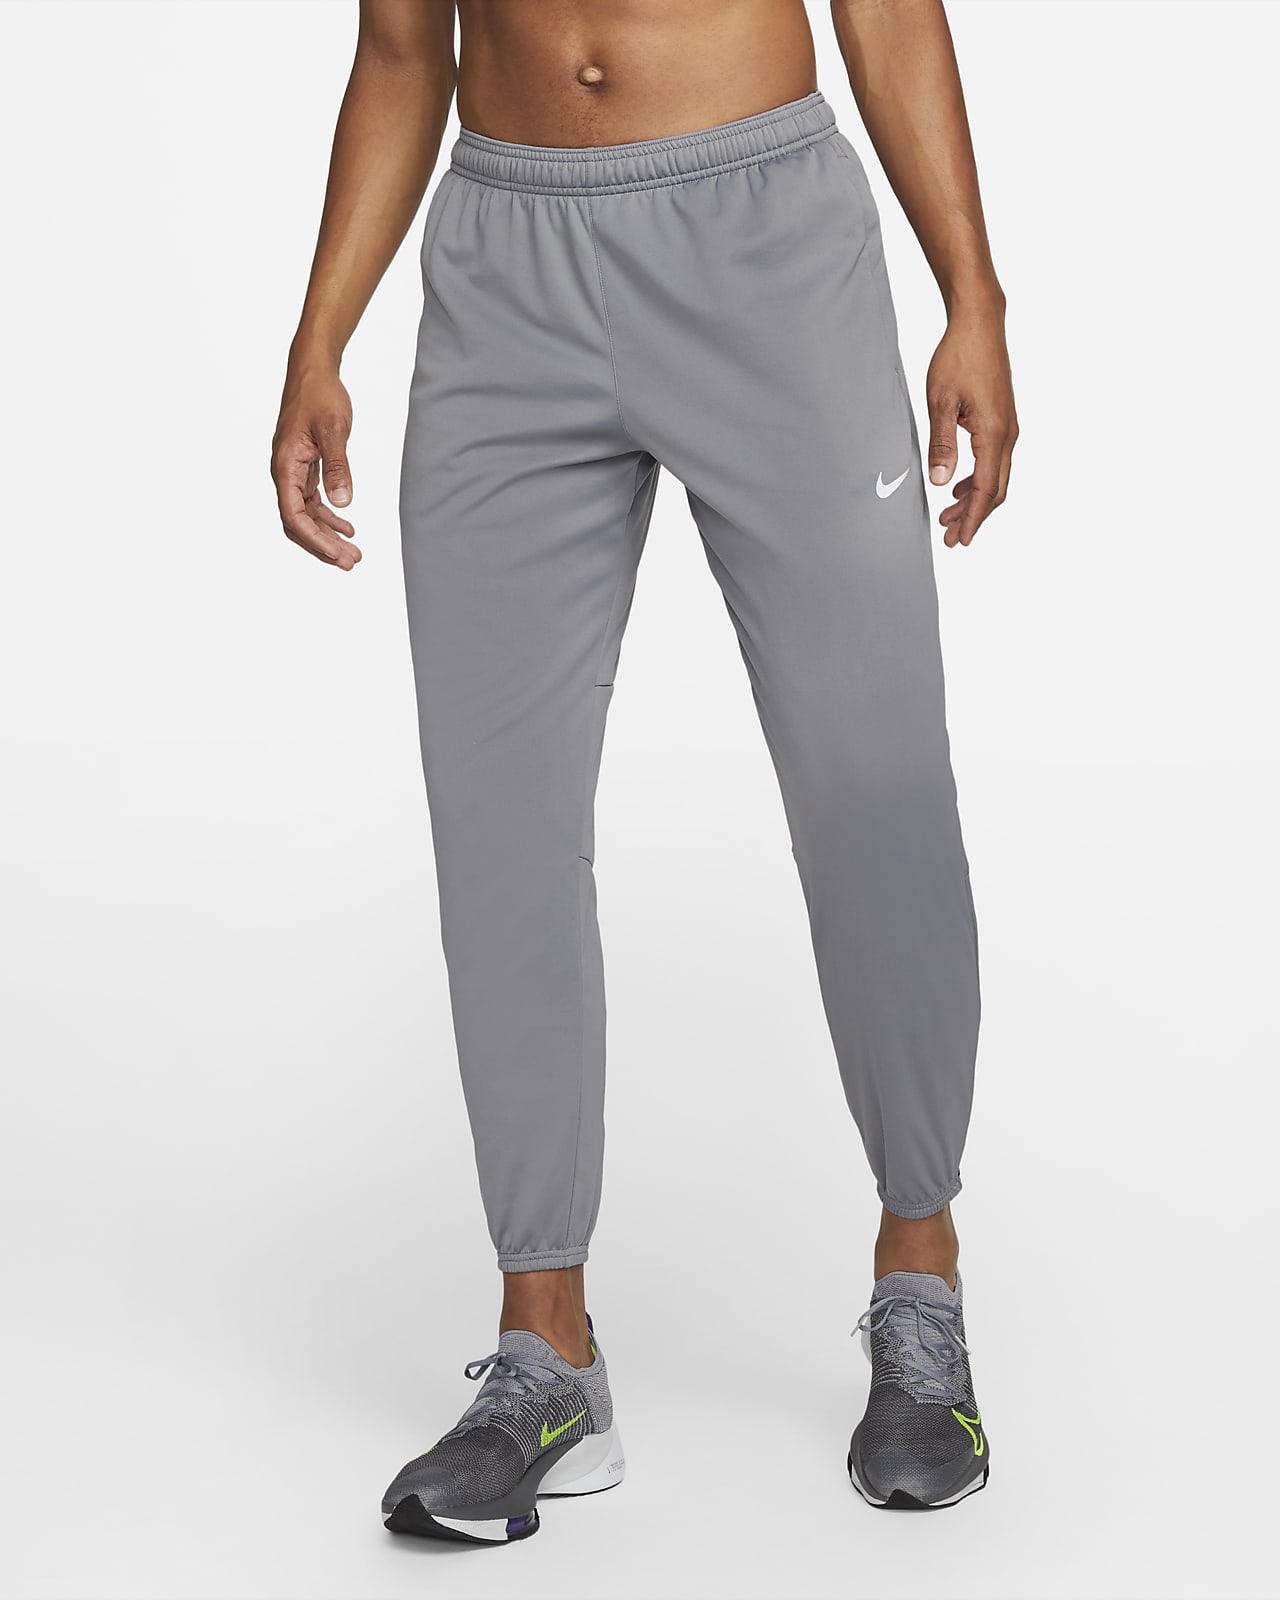 Pants de running para hombre Nike Therma-FIT Repel Nike.com